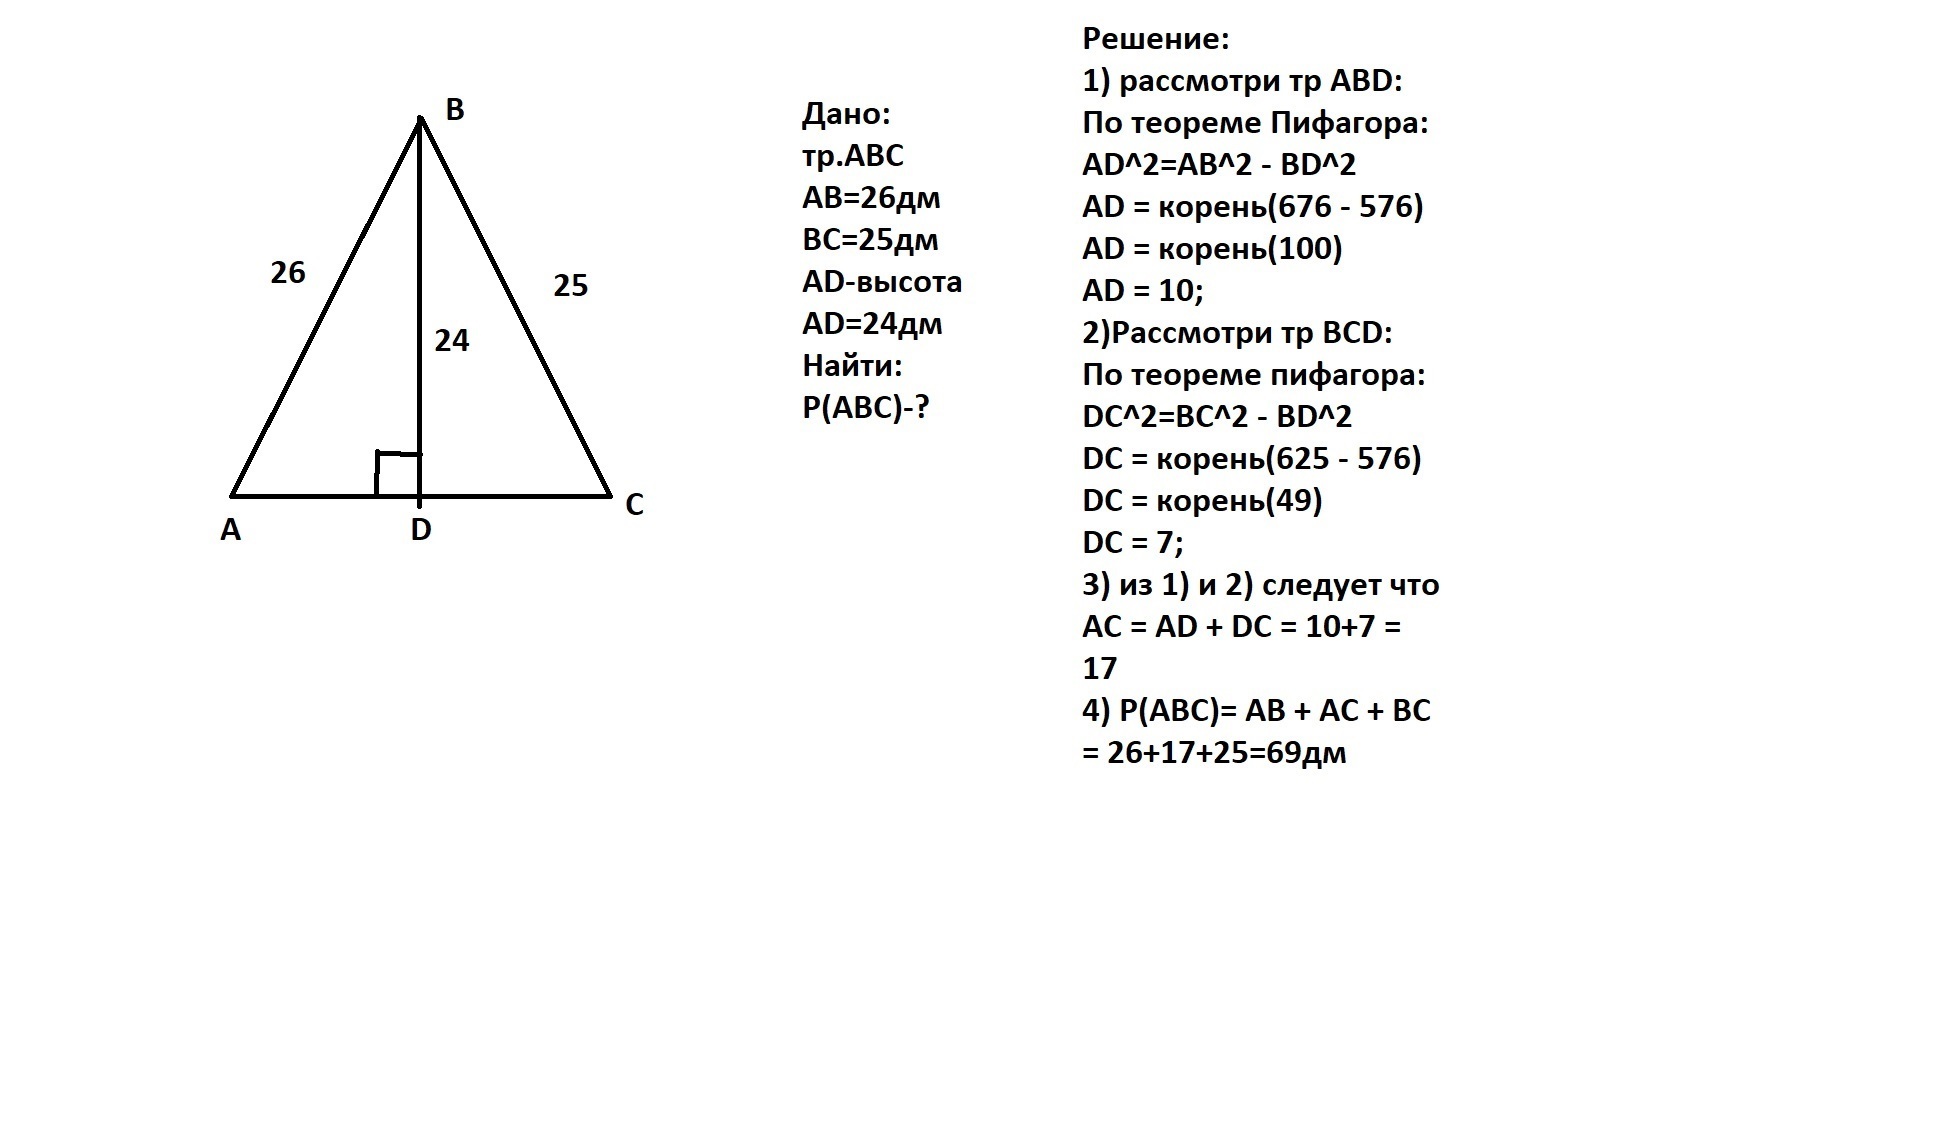 Высота бд прямоугольного треугольника авс равна 24